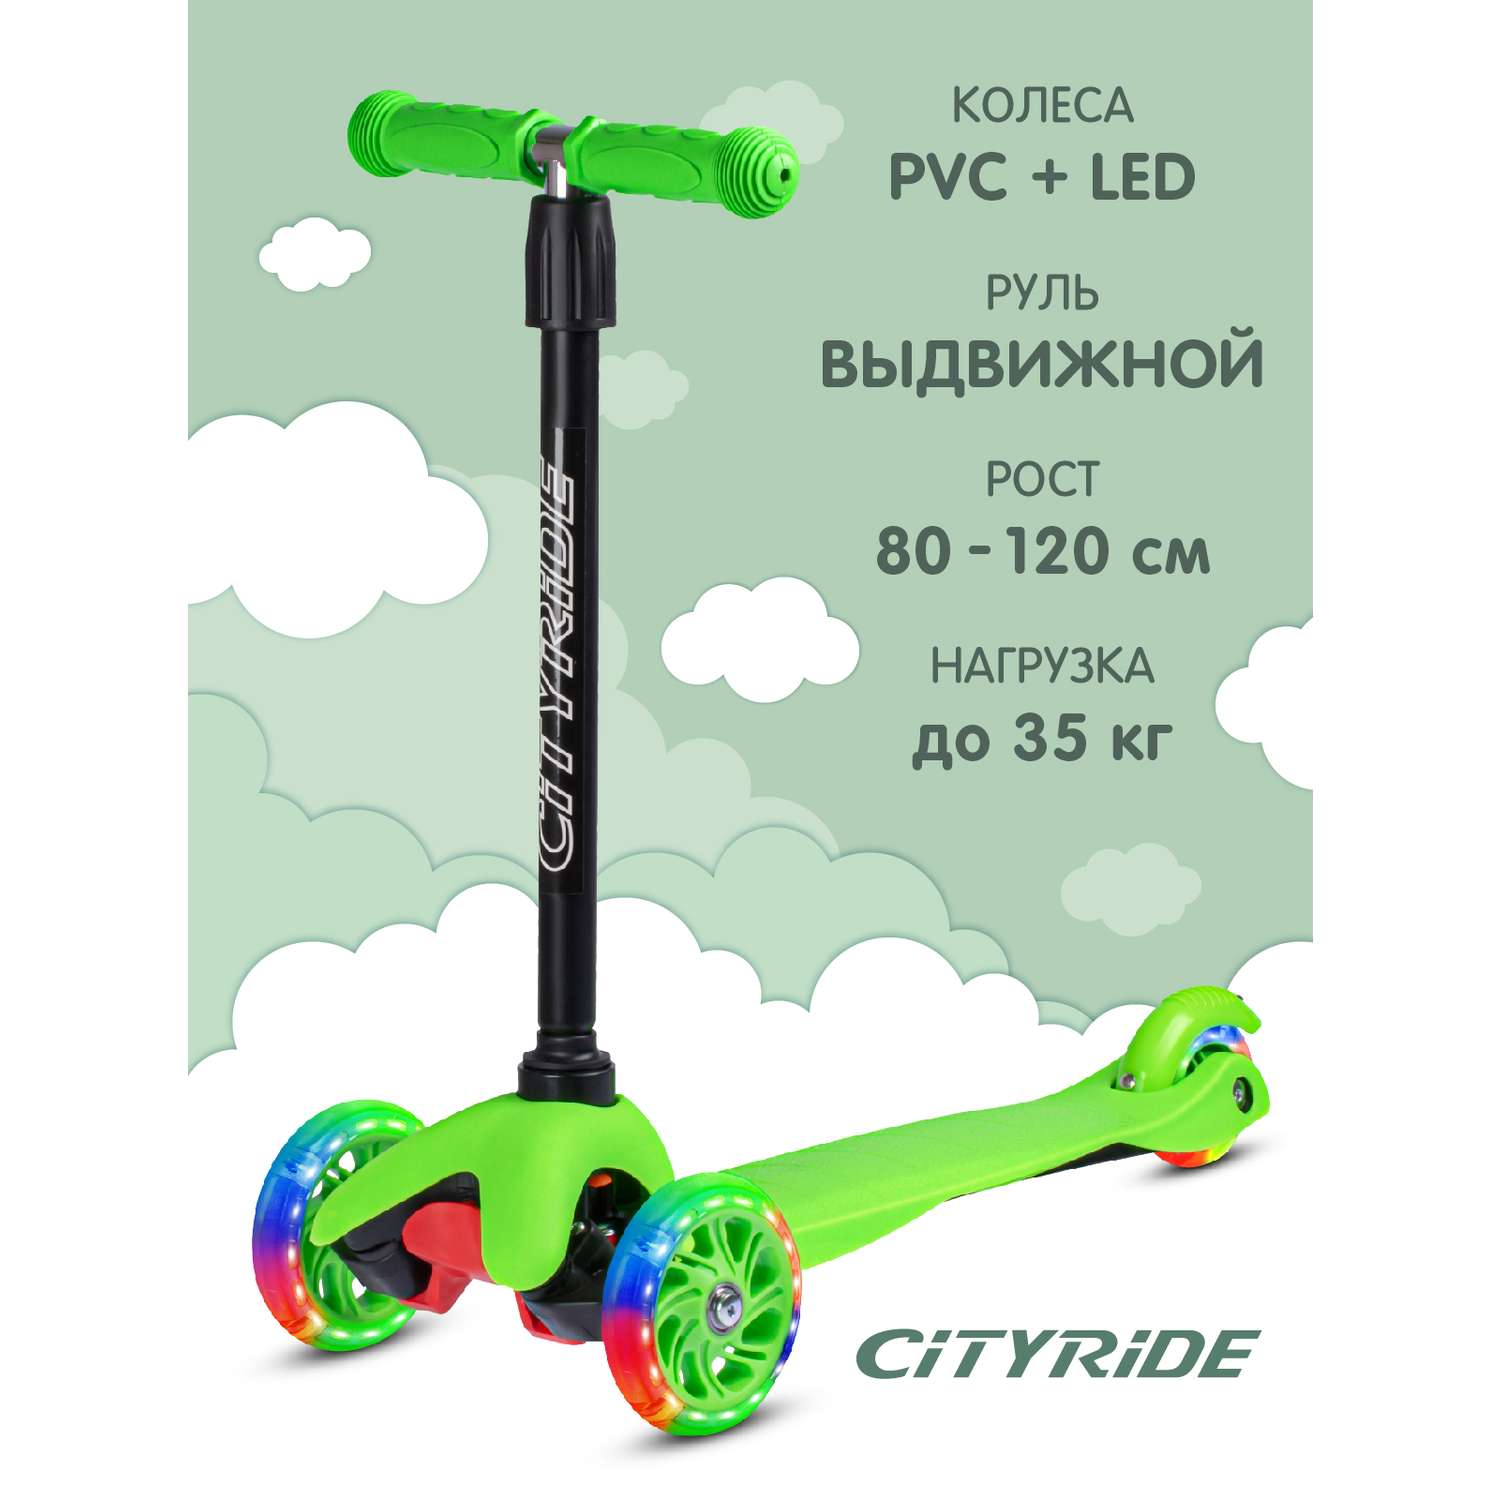 Самокат детский CITYRIDE трехколесный xd4 с телескопическим рулем дека PP+нейлон колеса PVC 110/76 с подсветкой - фото 1